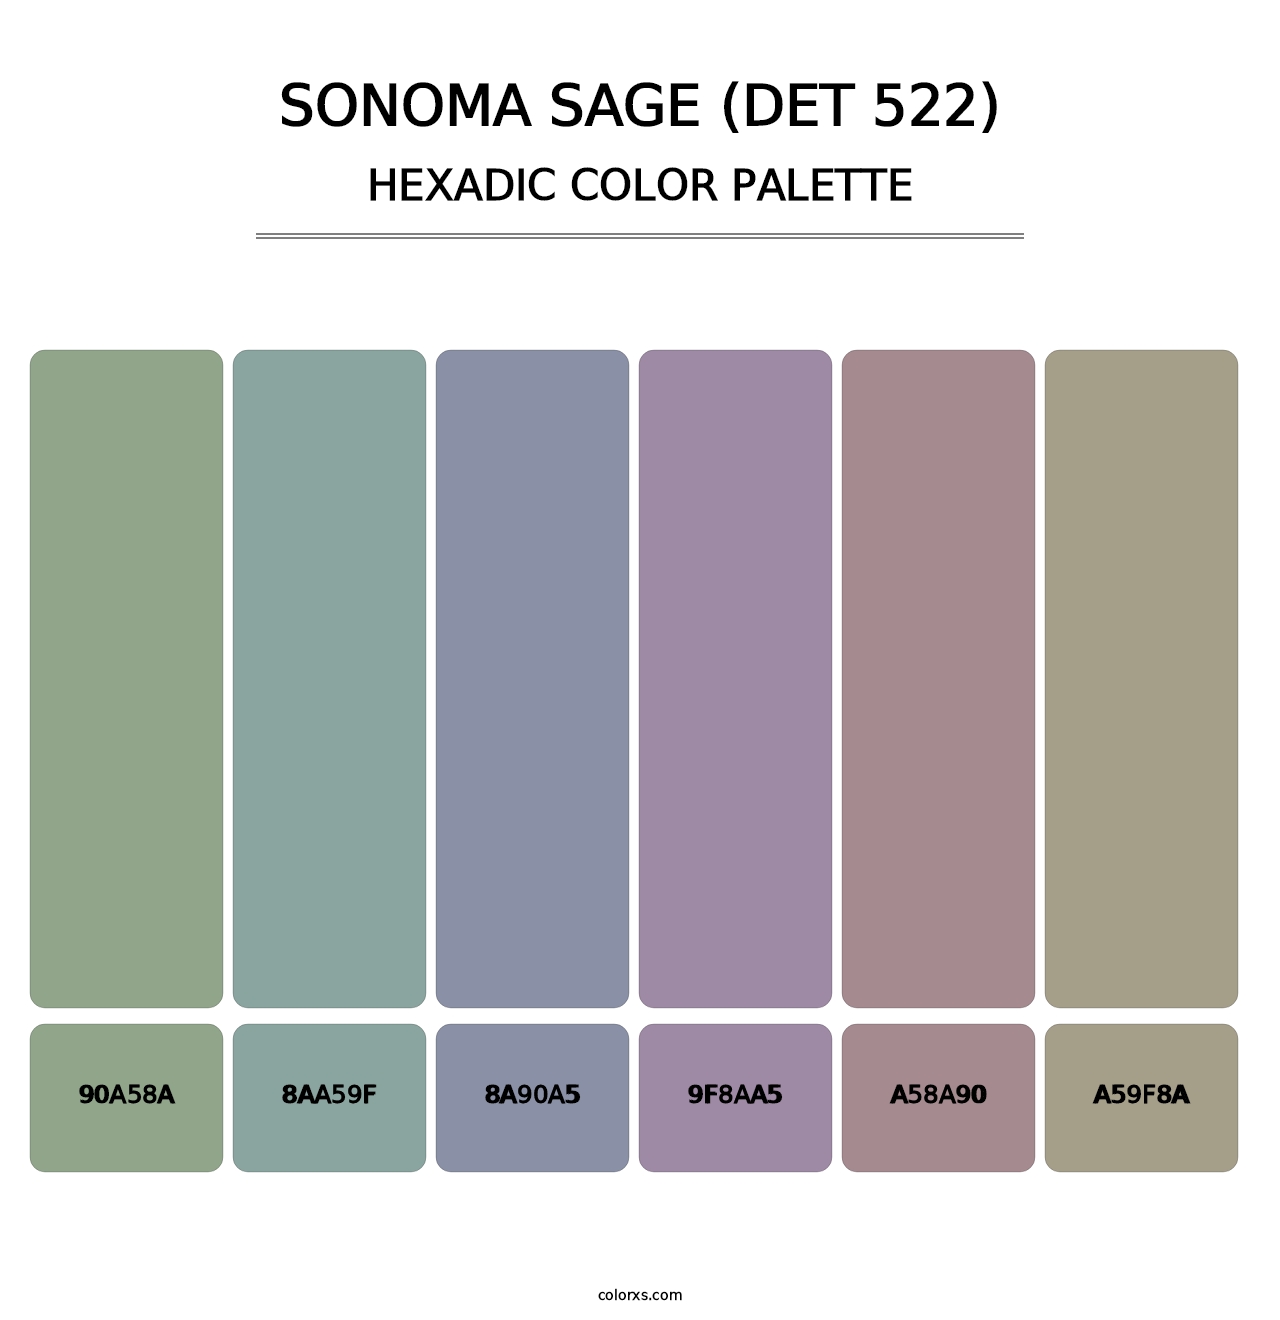 Sonoma Sage (DET 522) - Hexadic Color Palette